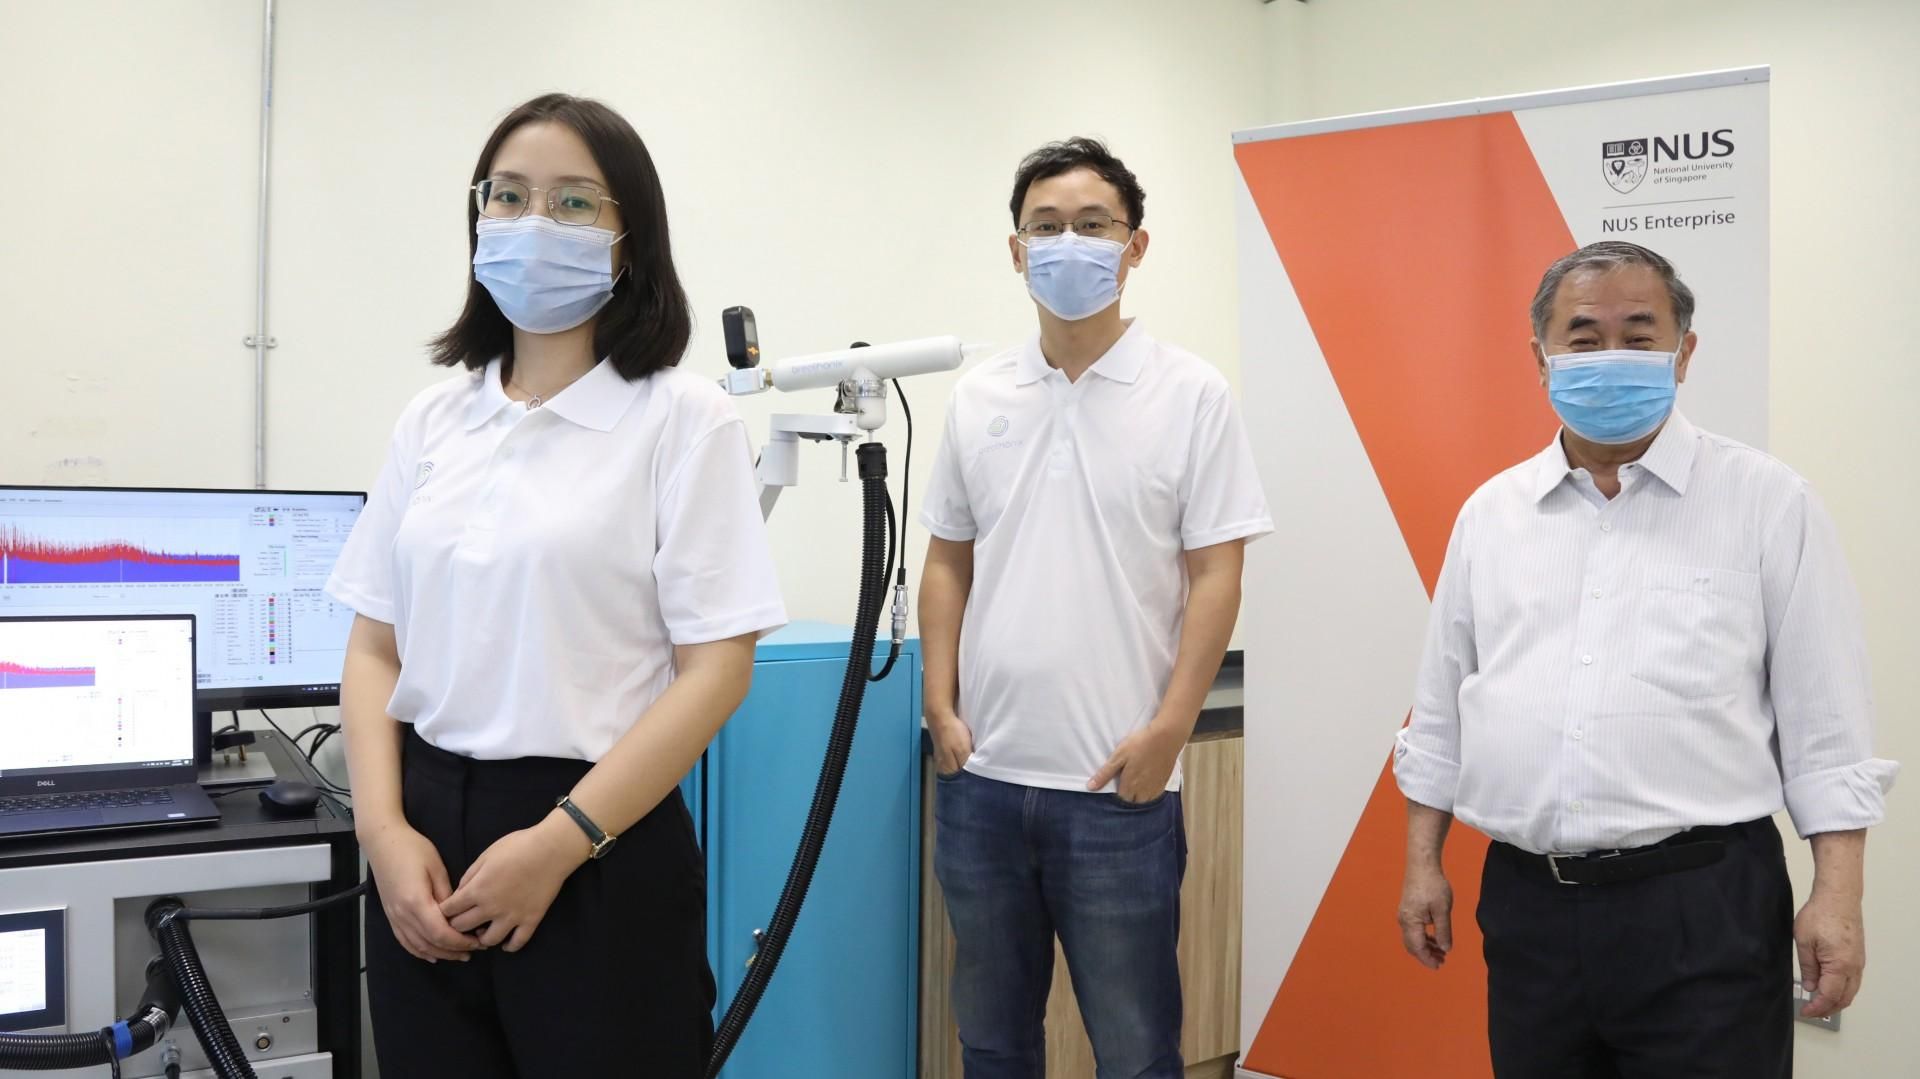 Миттєвий тест на коронавірус схвалили у Сінгапурі: у чому унікальність методу